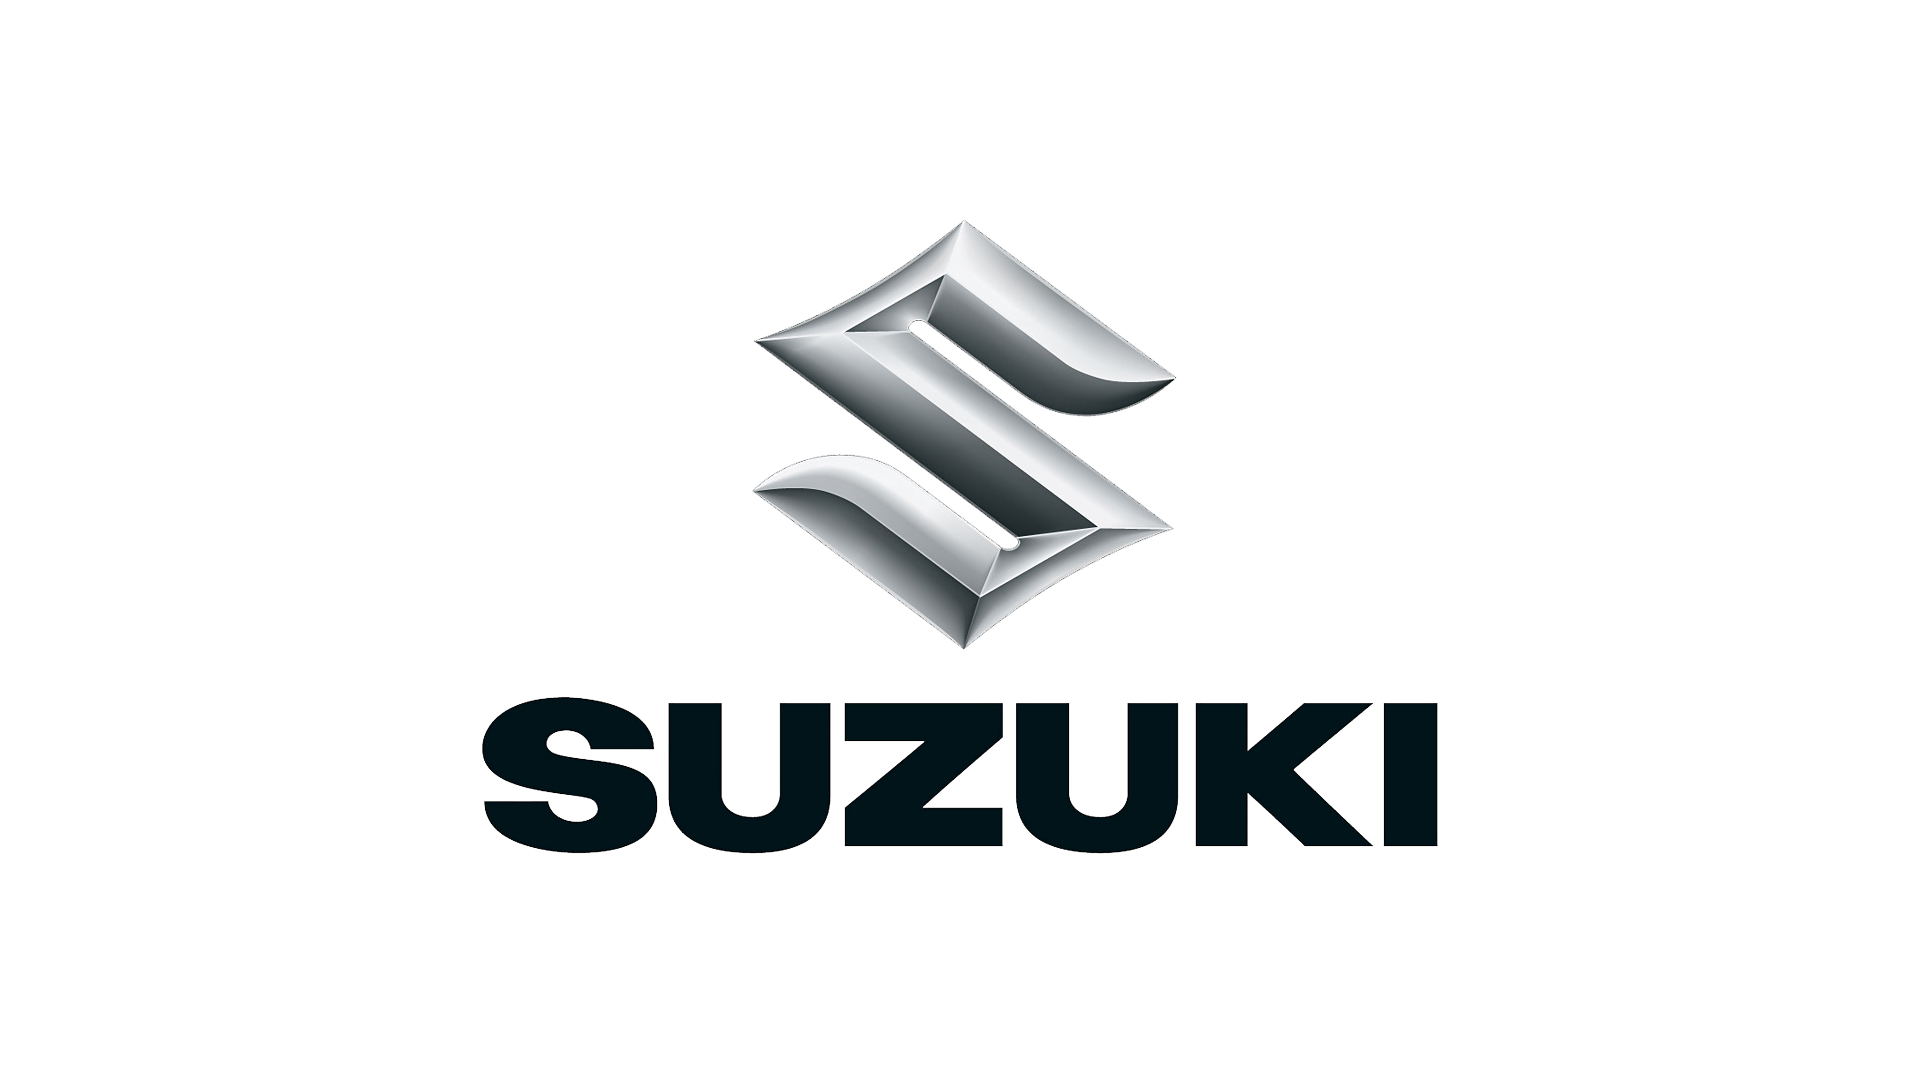 https://www.carlogos.org/logo/Suzuki-logo-1920x1080.png